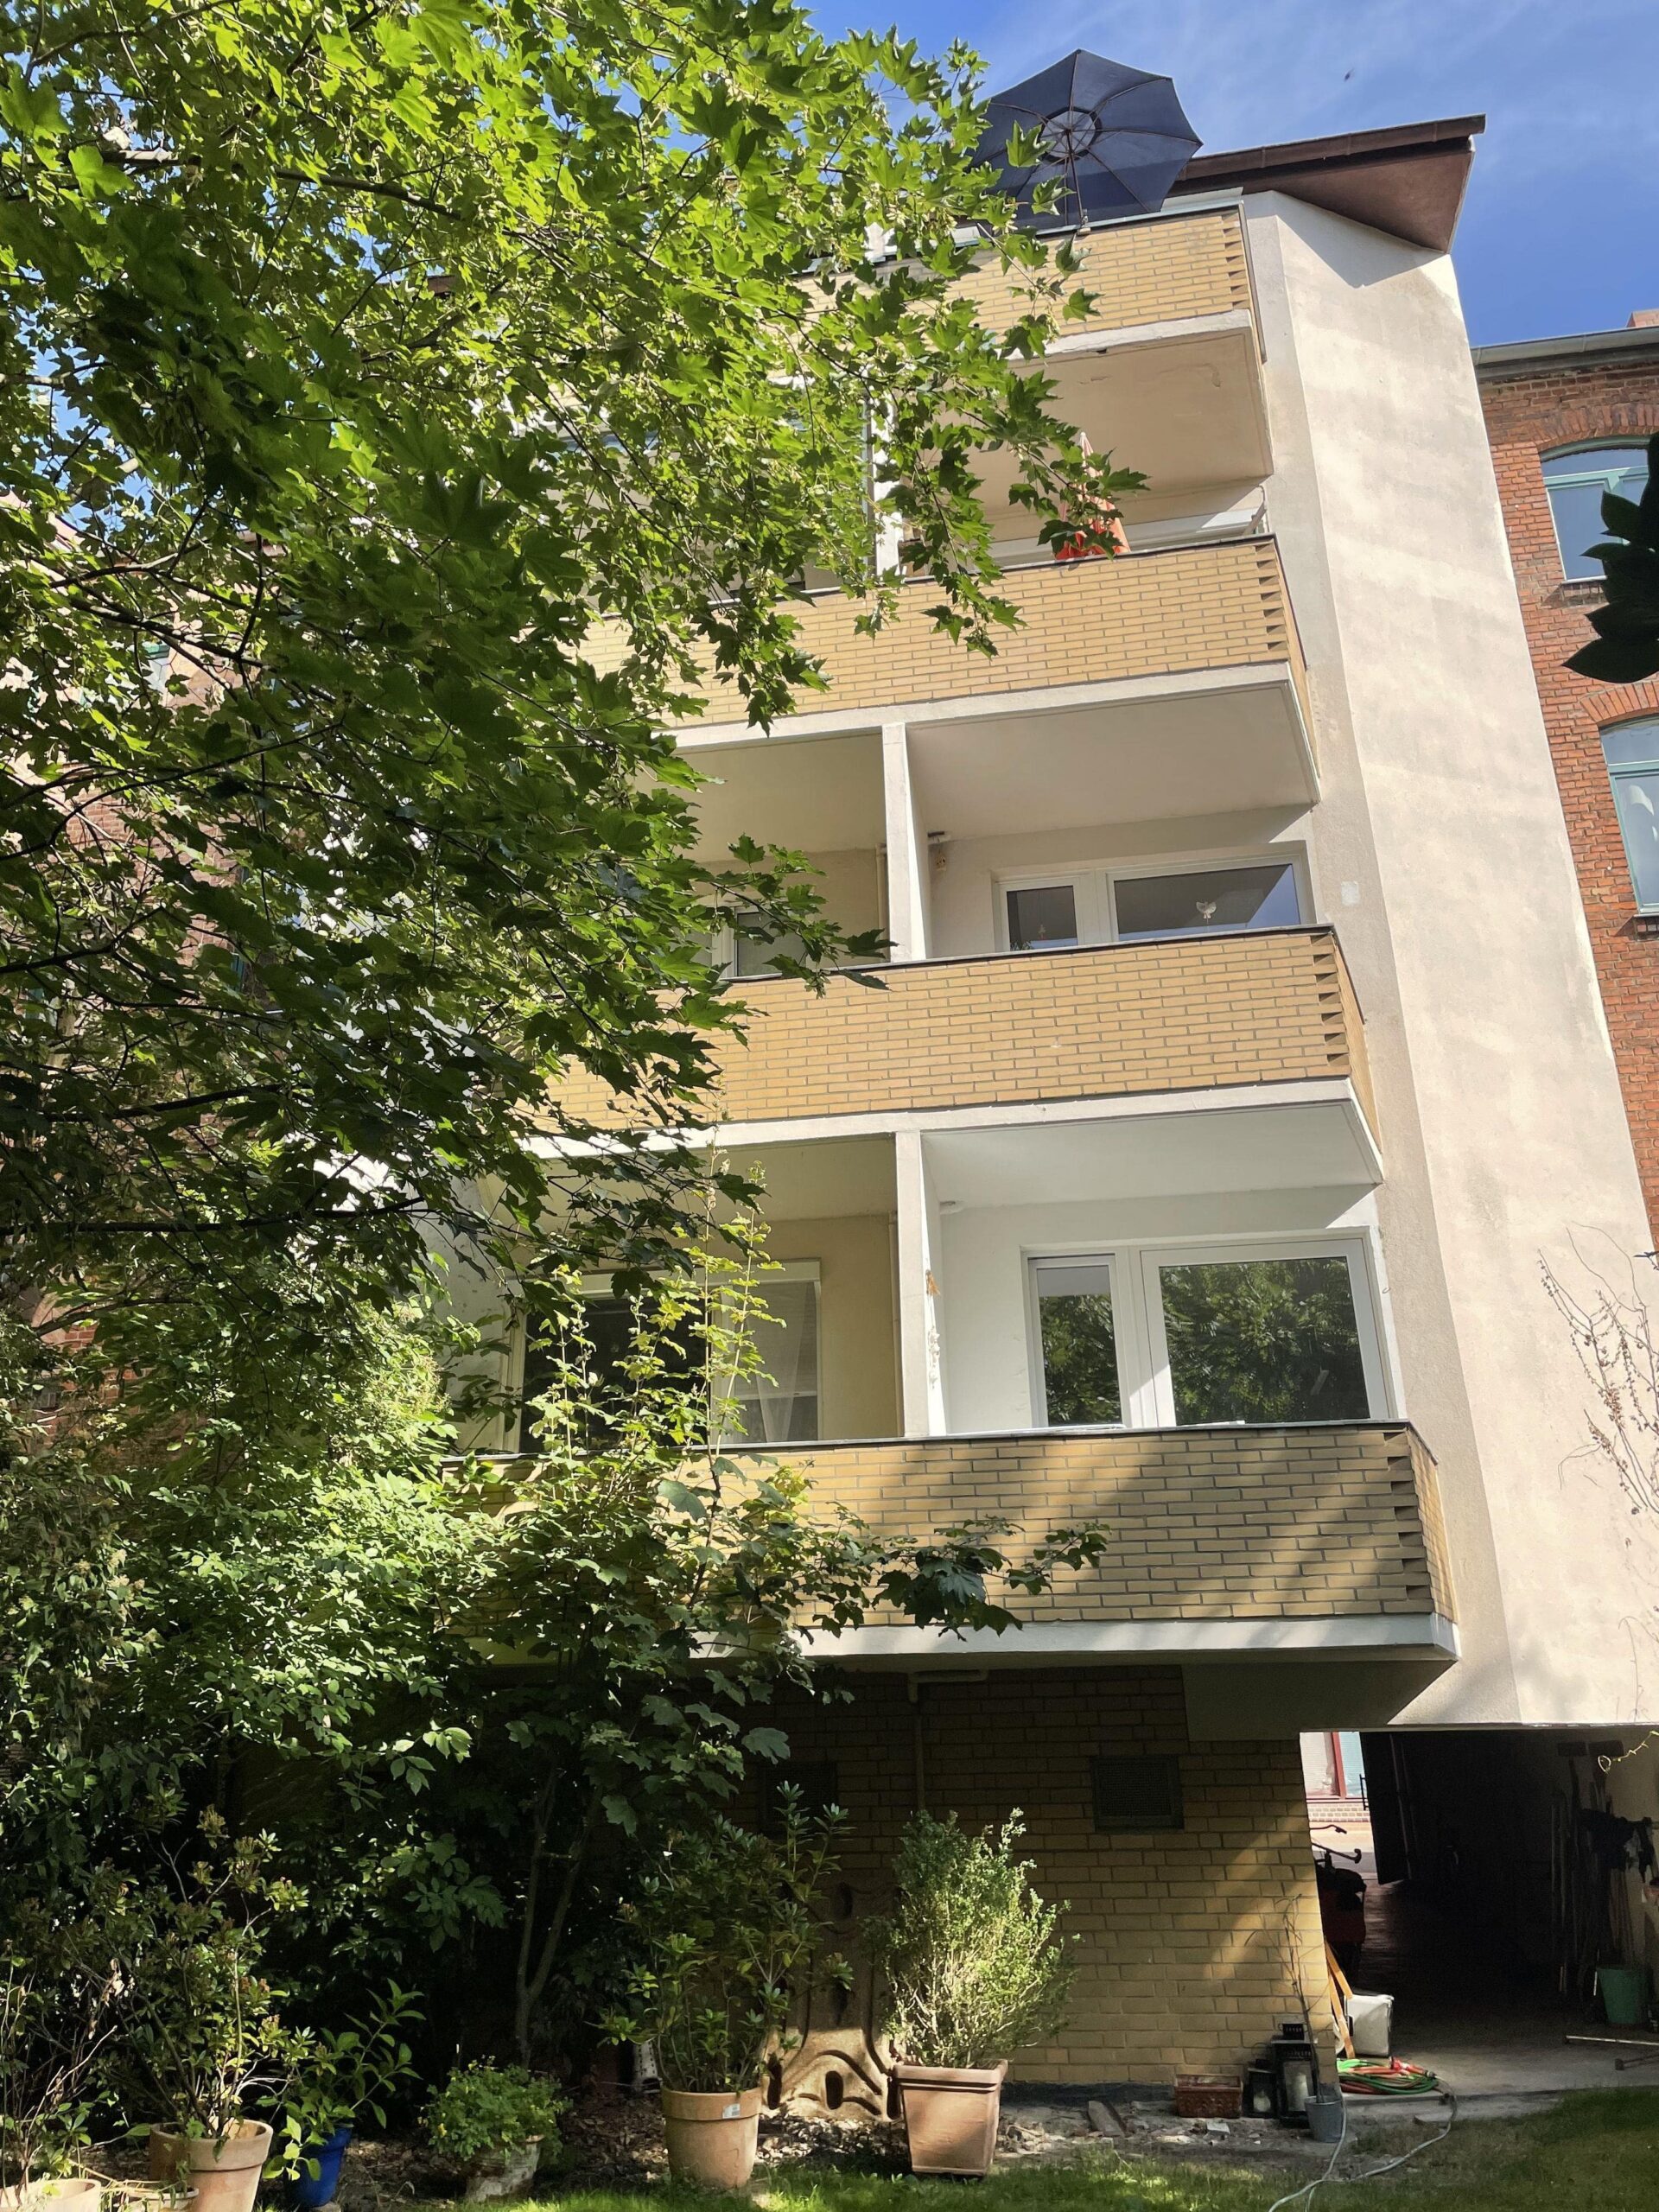 Kapitalanlage oder Selbstbezug: Kleine Stadtwohnung in guter Wohnlage, 30449 Hannover, Erdgeschosswohnung